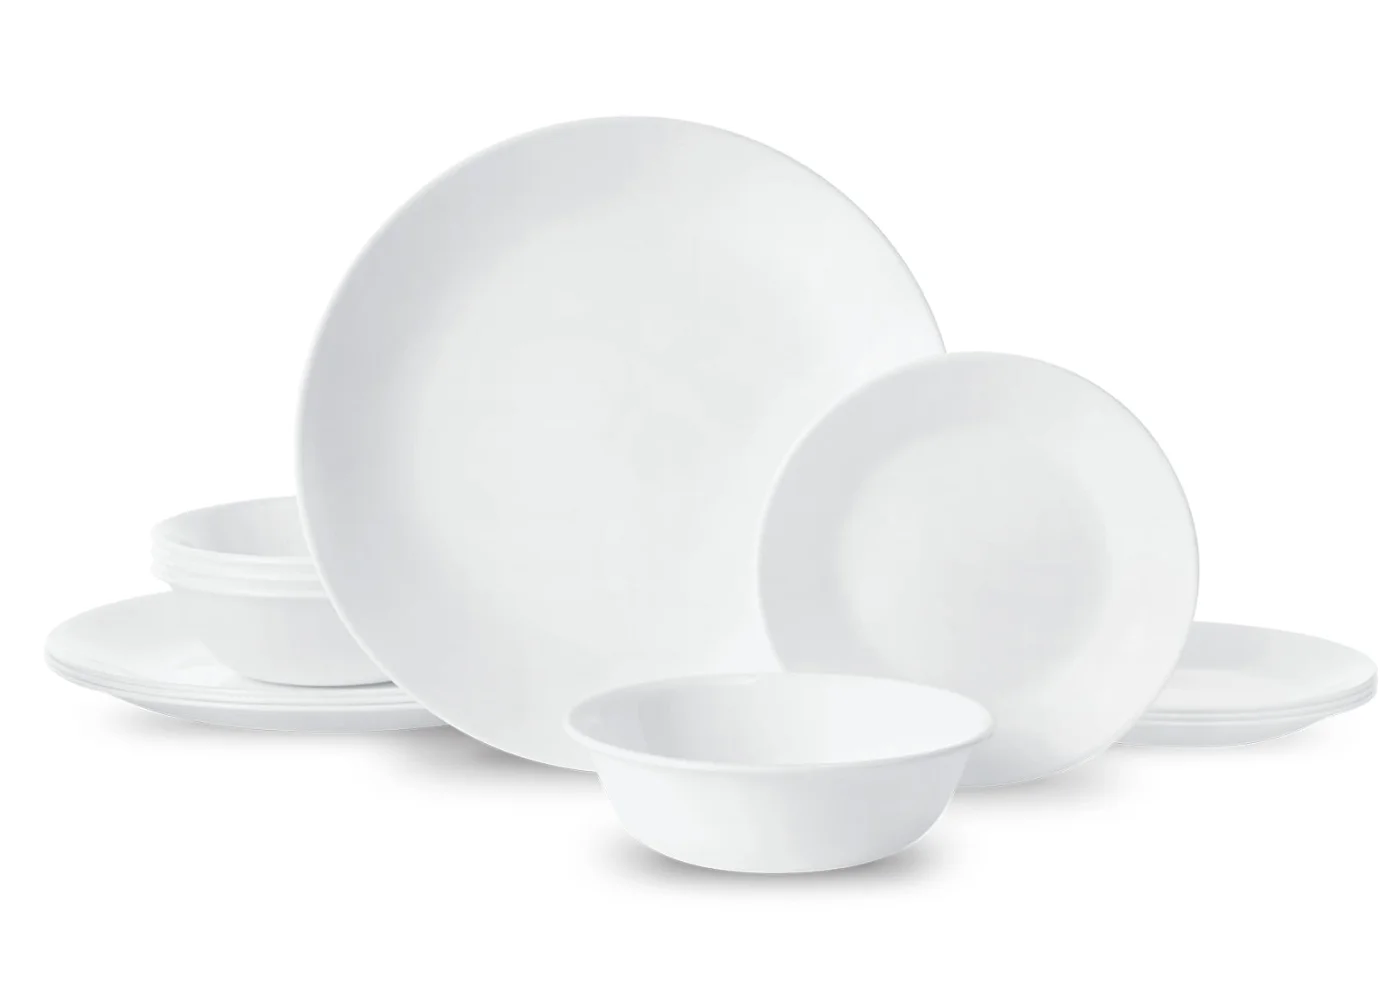 

Корель®-Зимний морозно-белый, круглый набор посуды из 12 предметов, фарфоровые столовые наборы